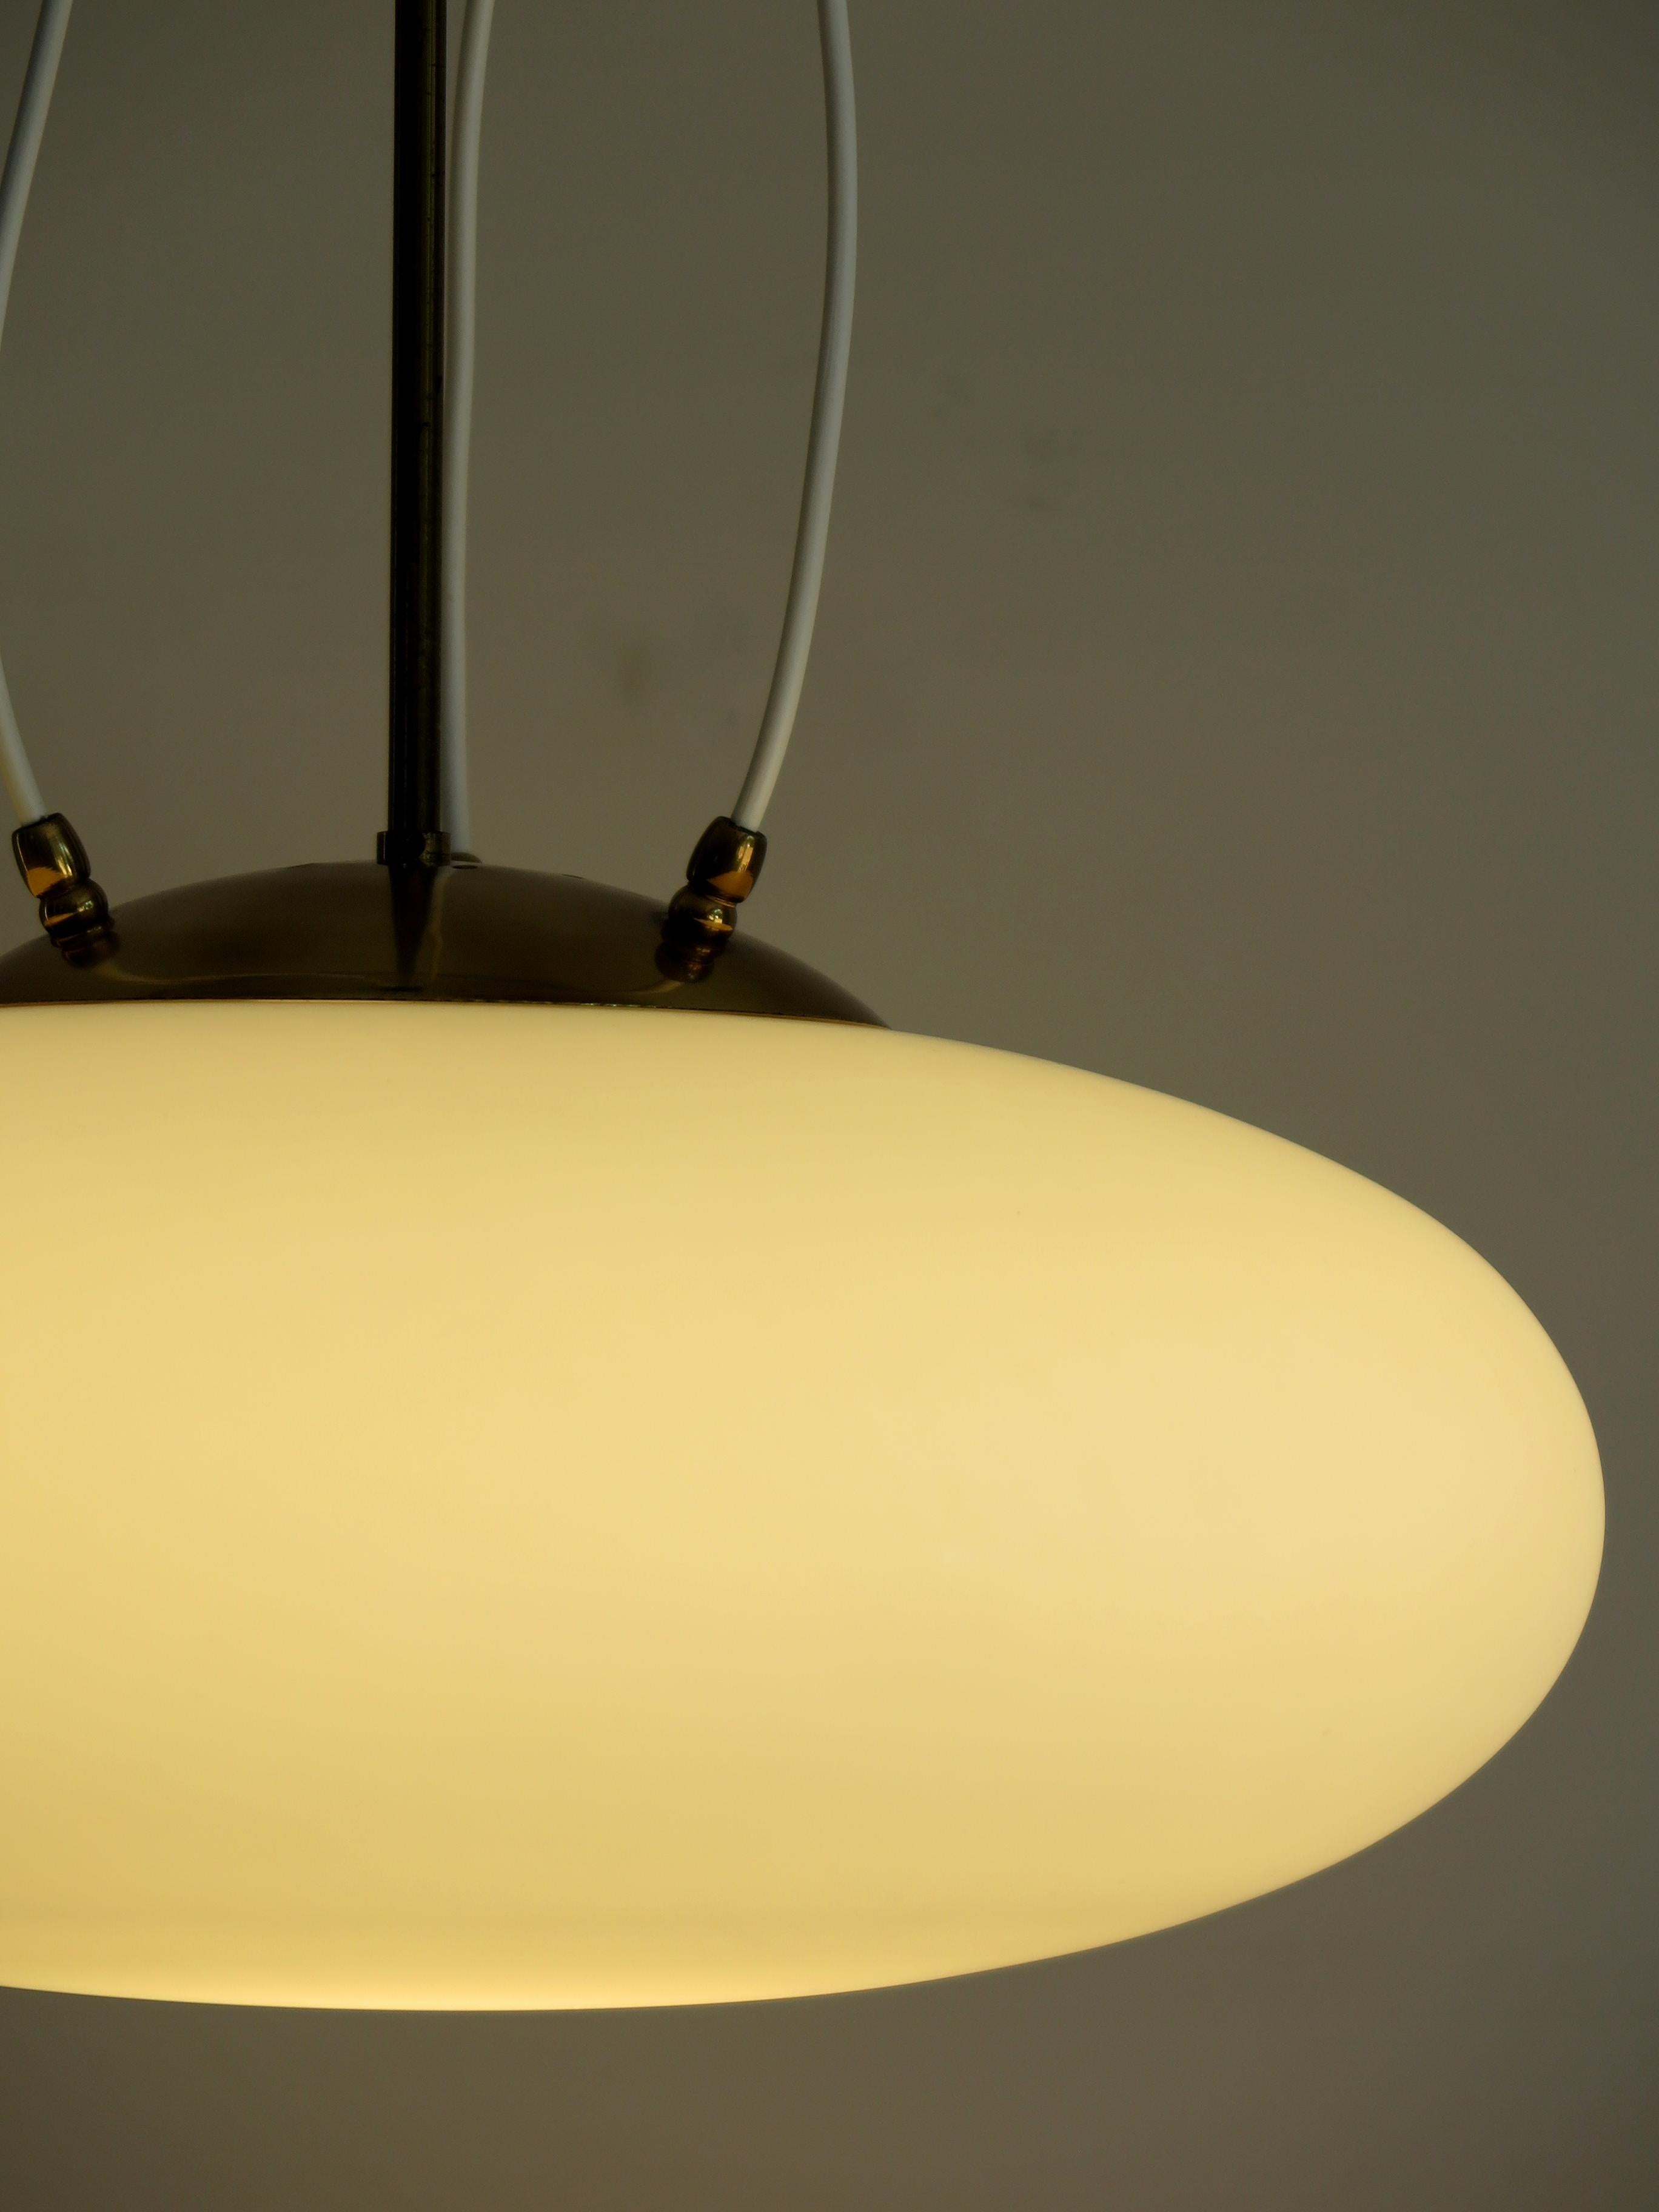 Lampe pendante italienne Stilnovo modèle 1104, diffuseur en verre satiné blanc et tige en laiton, années 1950
Veuillez noter que la lampe est originale de l'époque et qu'elle présente des signes normaux d'âge et d'utilisation.